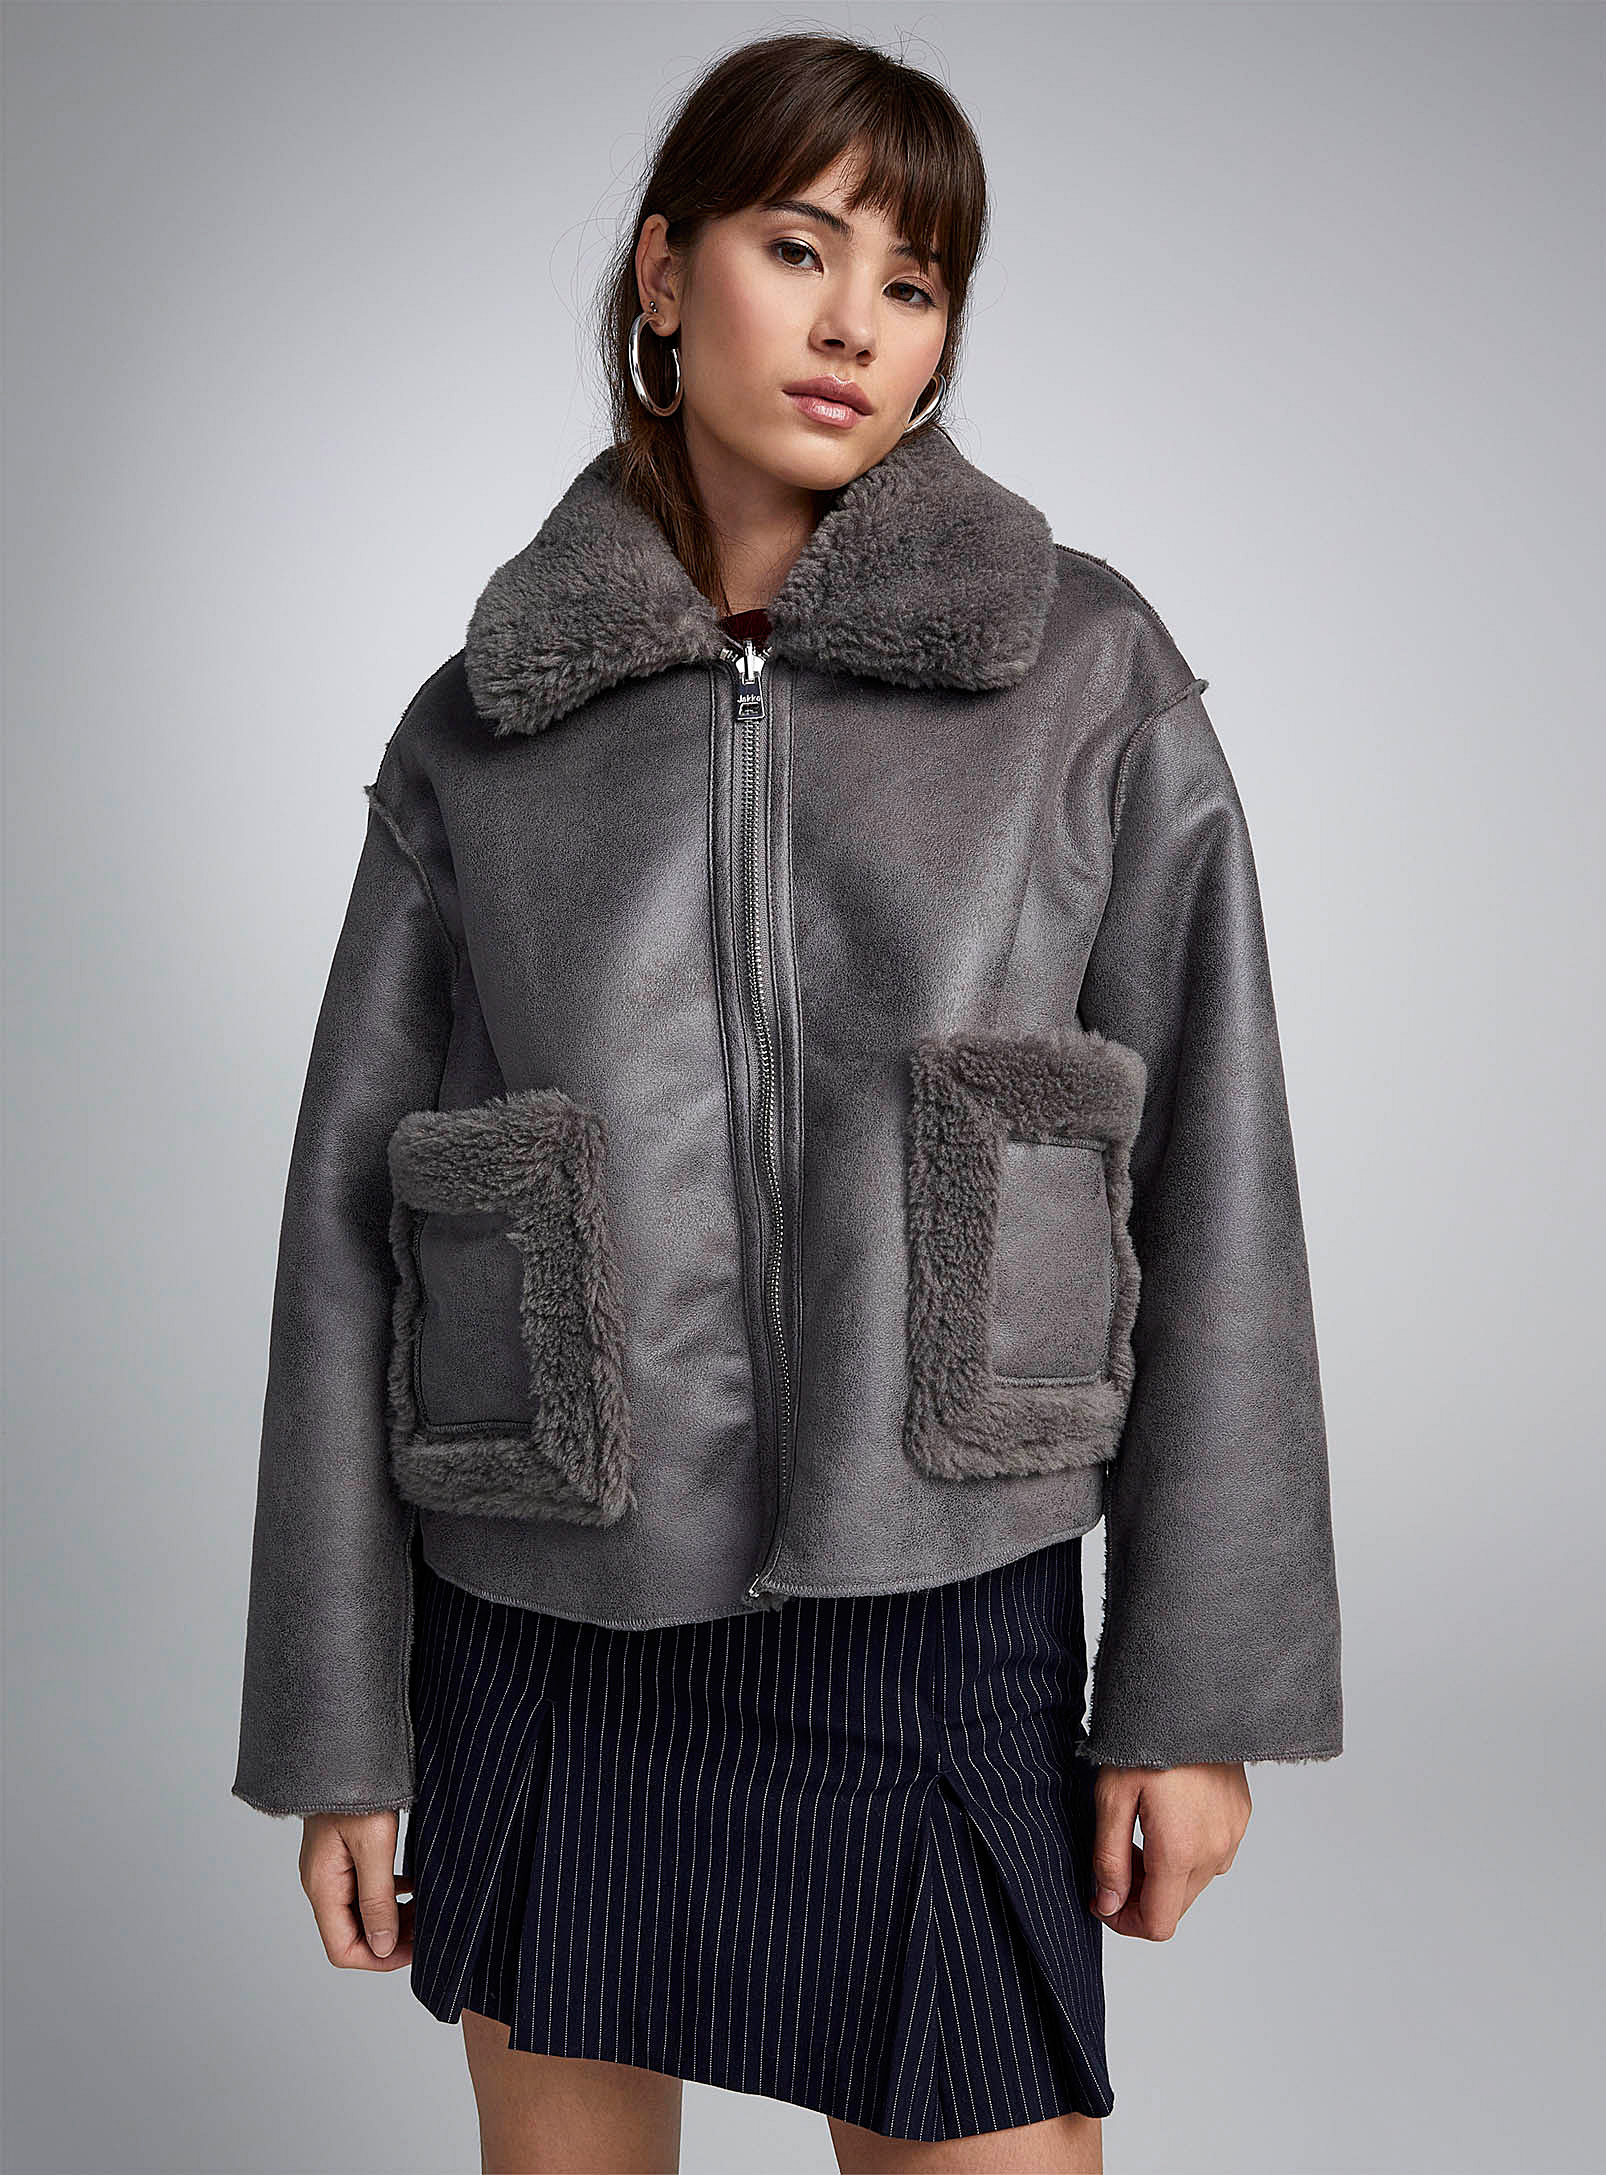 Jakke - Women's Sherpa shearling reversible jacket